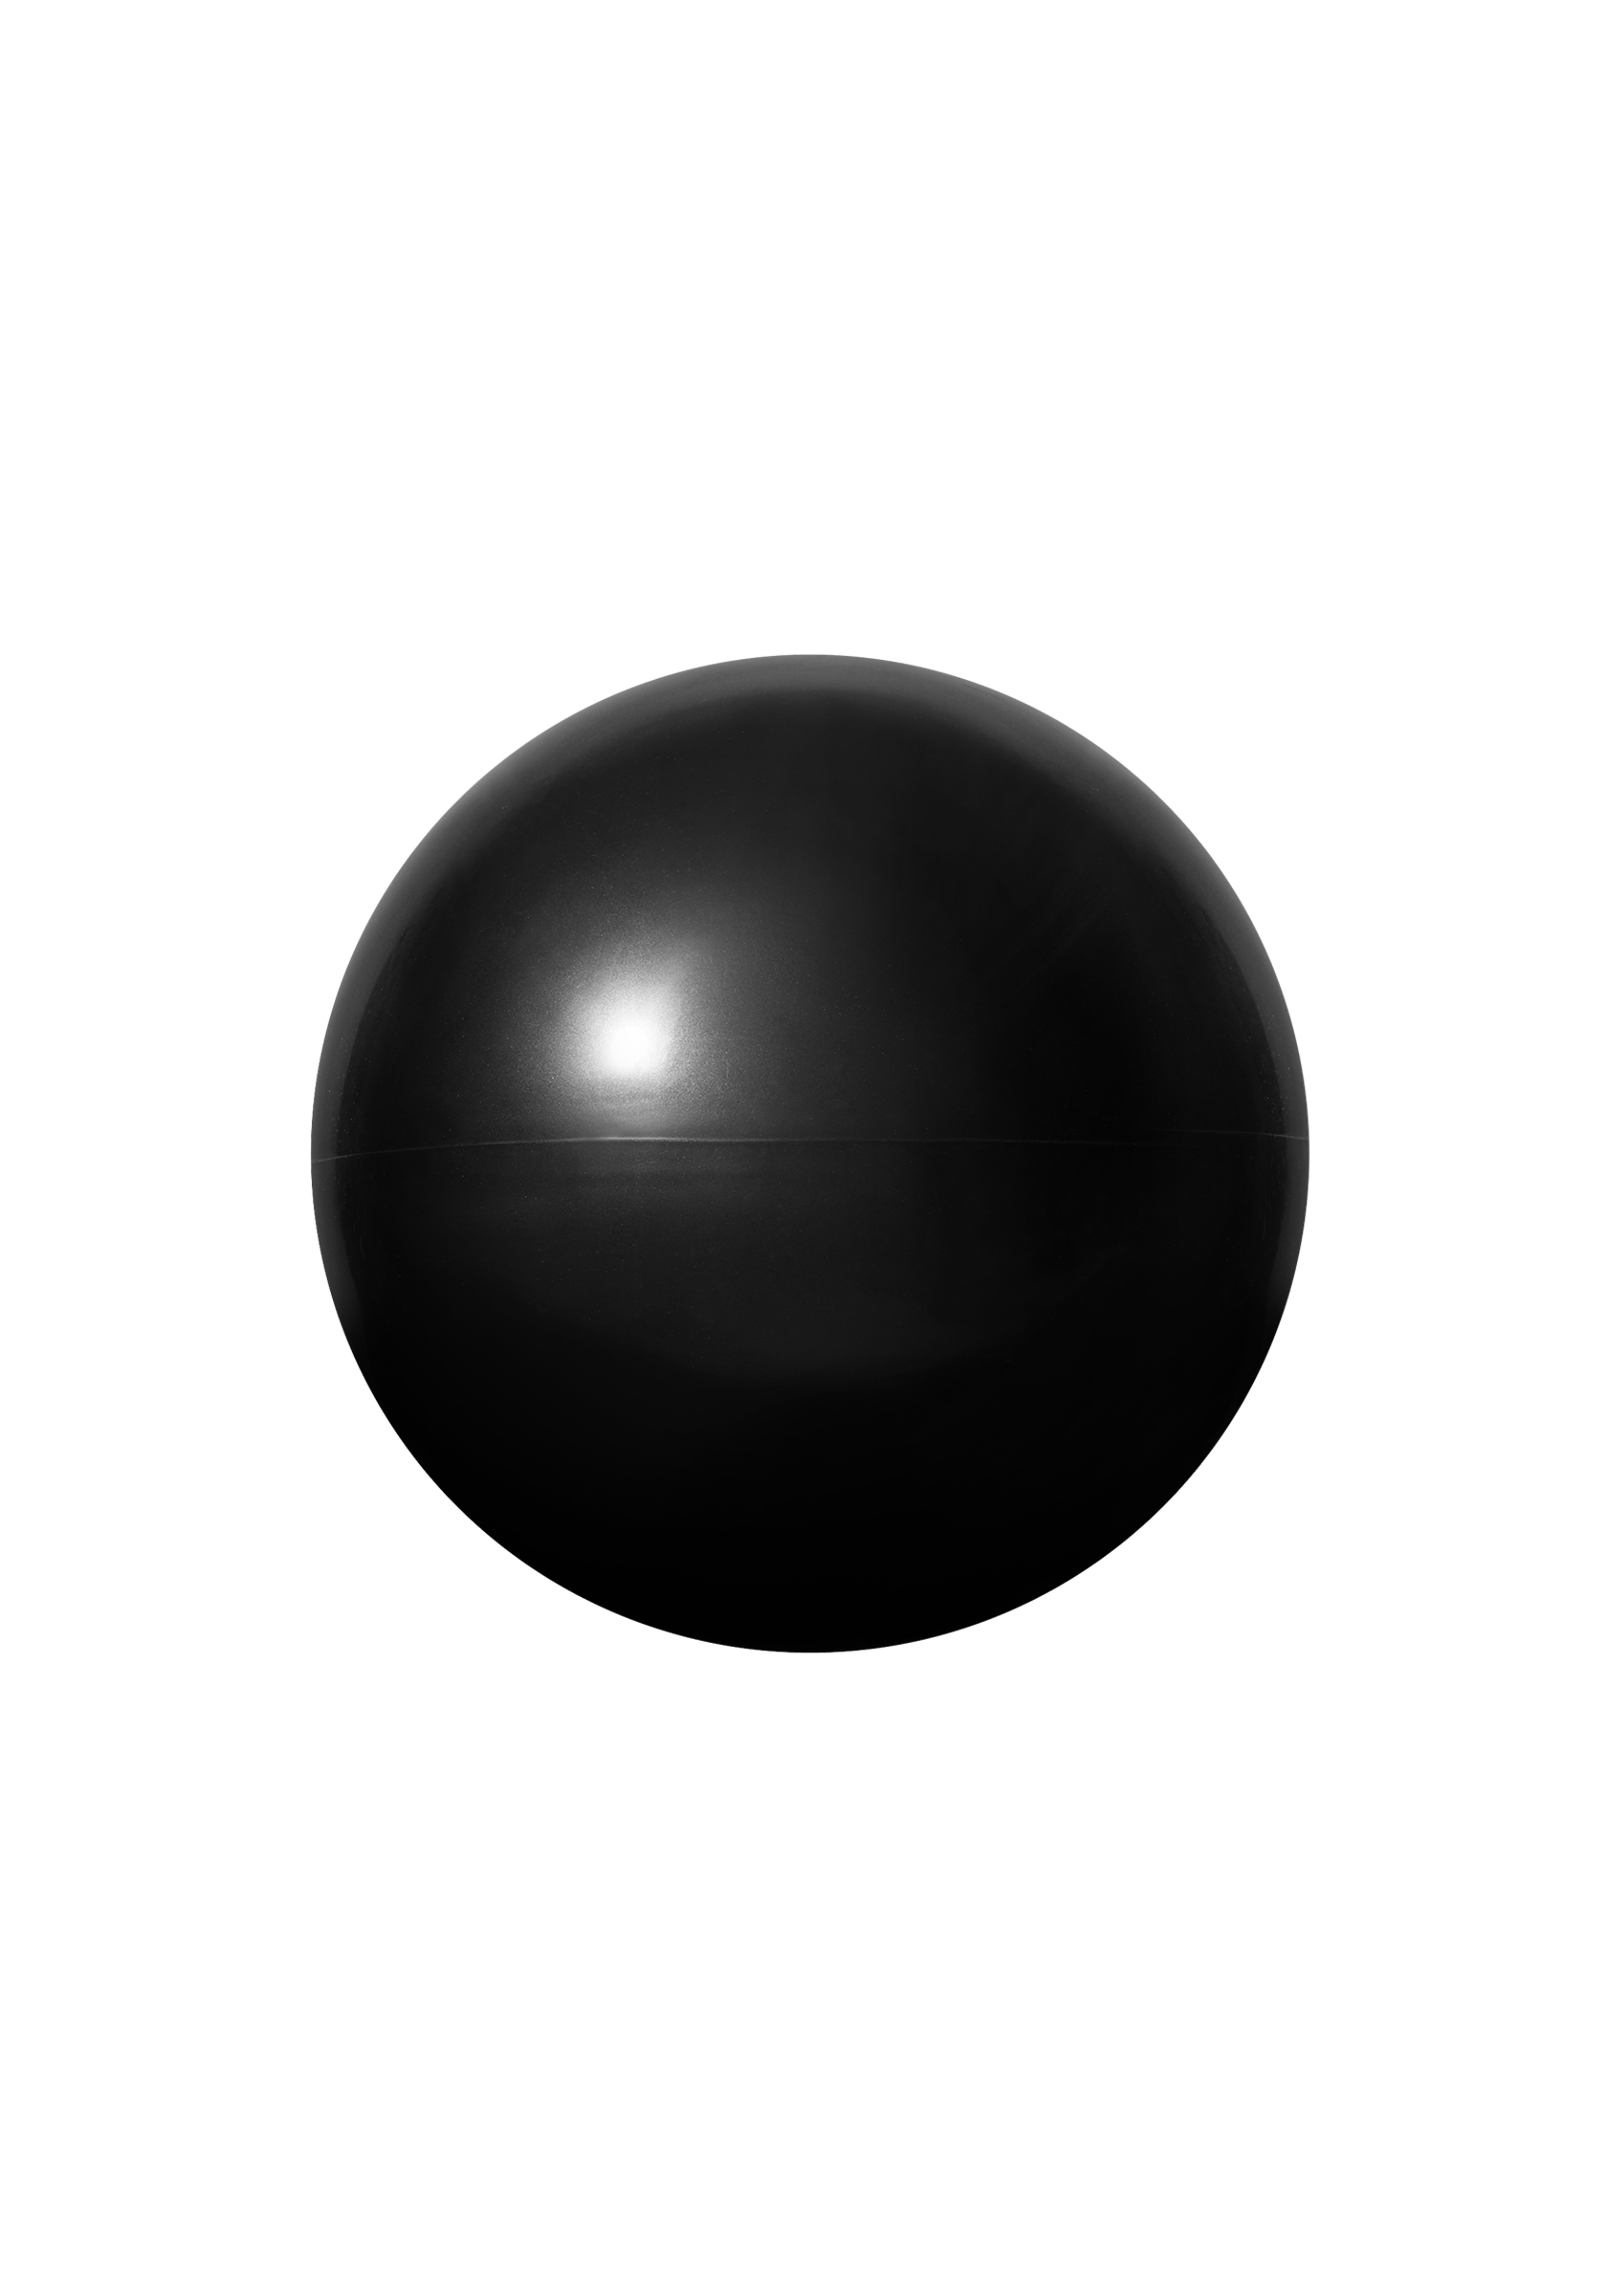 Exercise ball 18cm 1kg Black